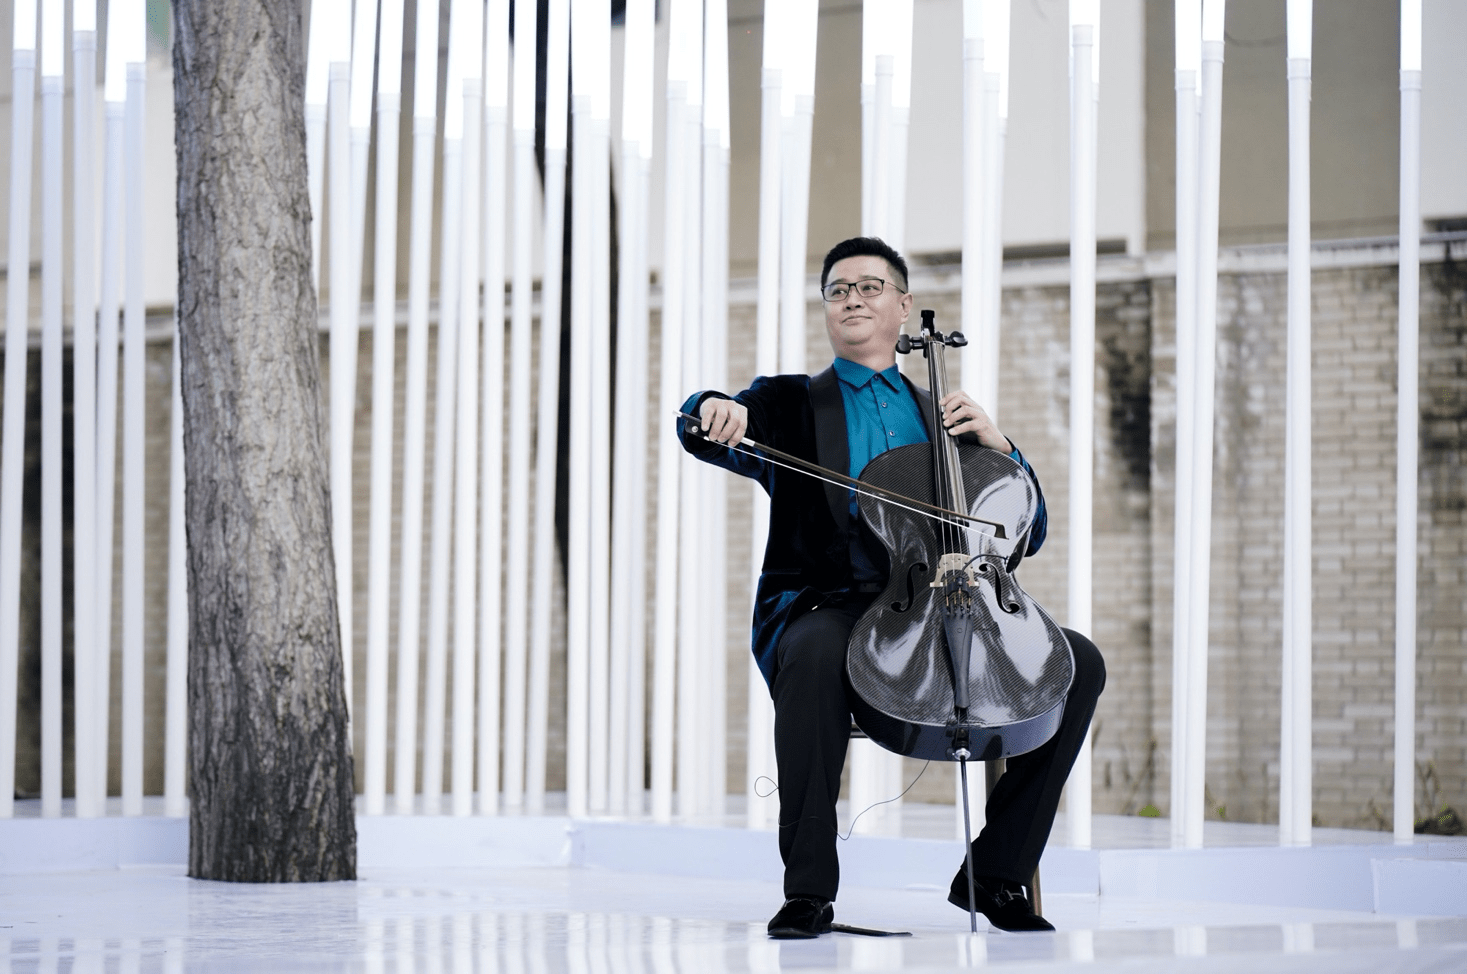 中央音乐学院大提琴教授 杨锰钢琴家 张佳佳北方昆曲剧院国家一级演员